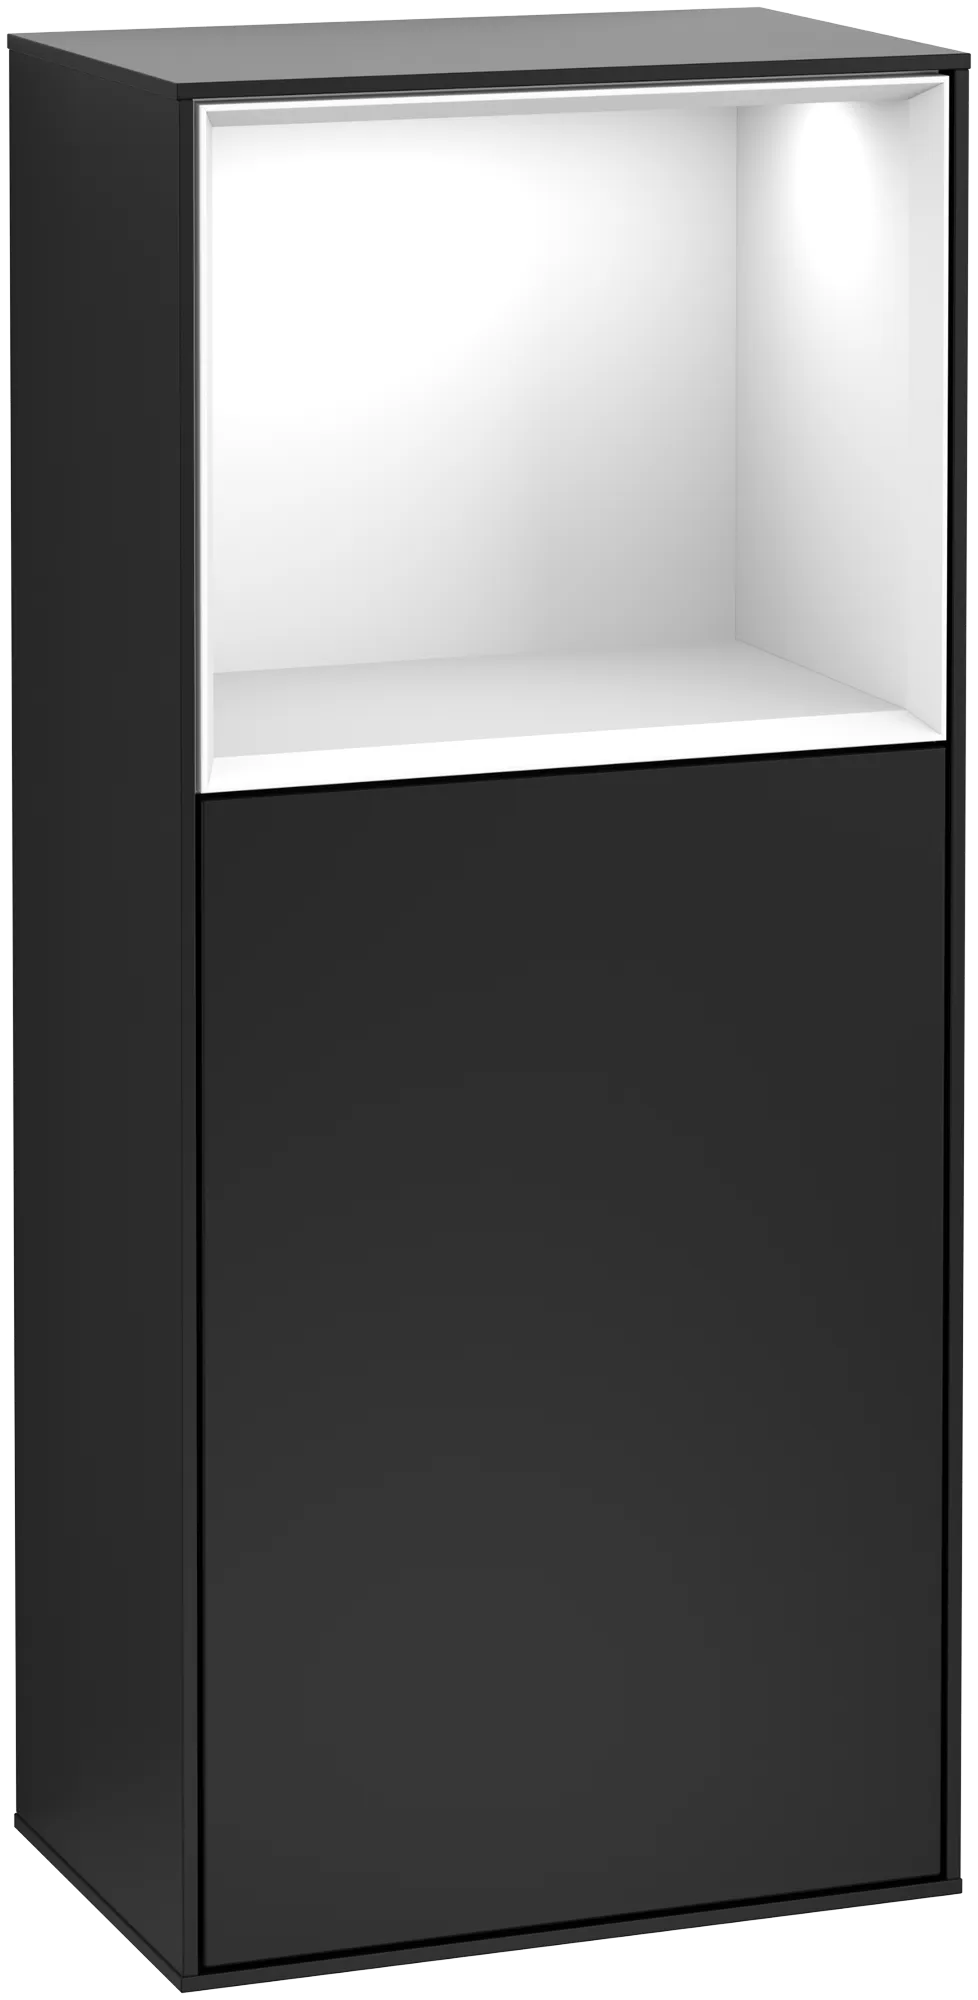 Bild von VILLEROY BOCH Finion Seitenschrank, mit Beleuchtung, 1 Tür, 418 x 936 x 270 mm, Black Matt Lacquer / Glossy White Lacquer #G500GFPD